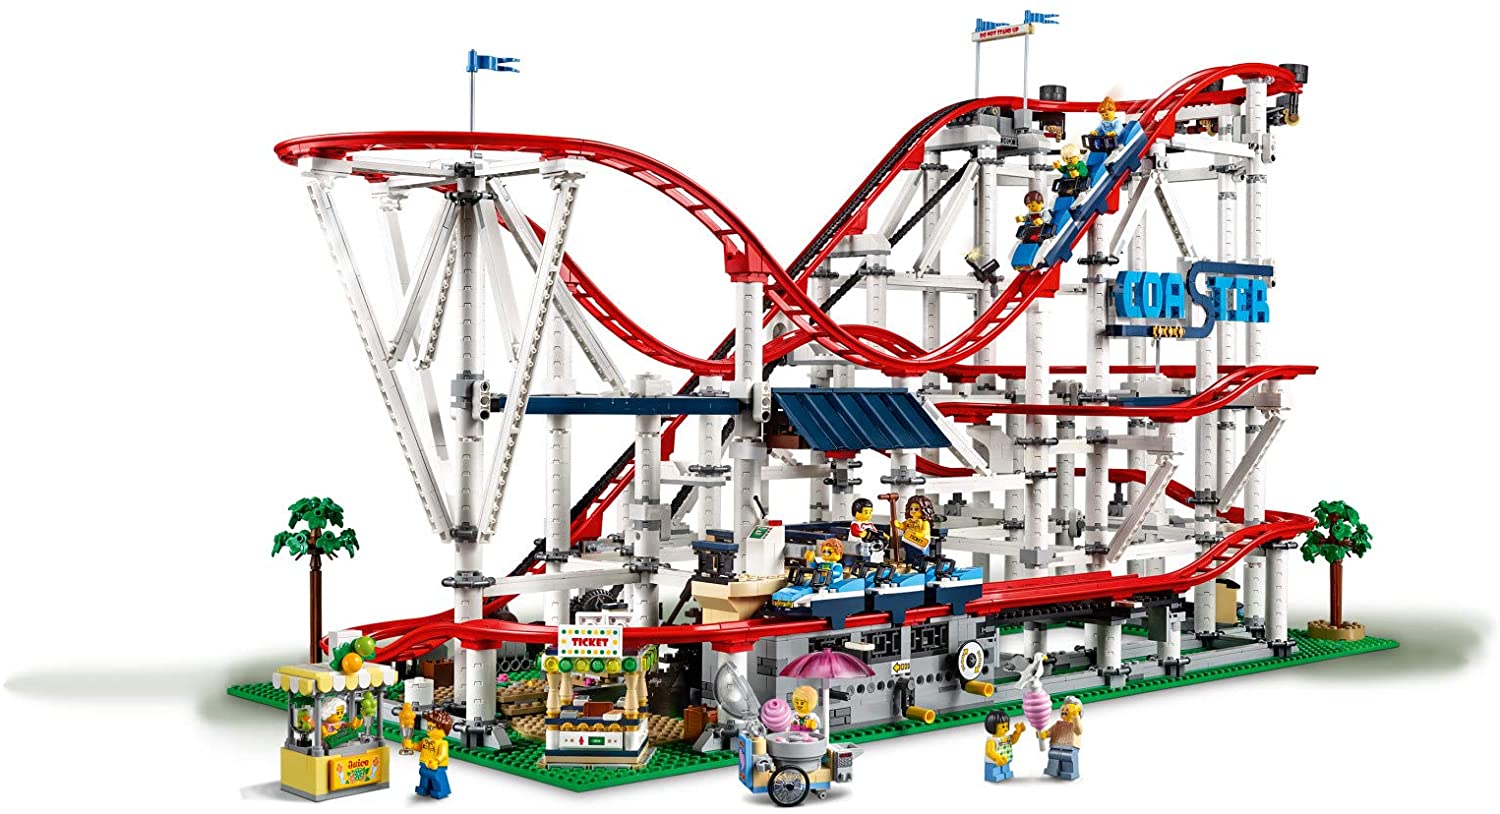 10261 LEGO Creator Roller Coaster - Tàu lượn siêu tốc